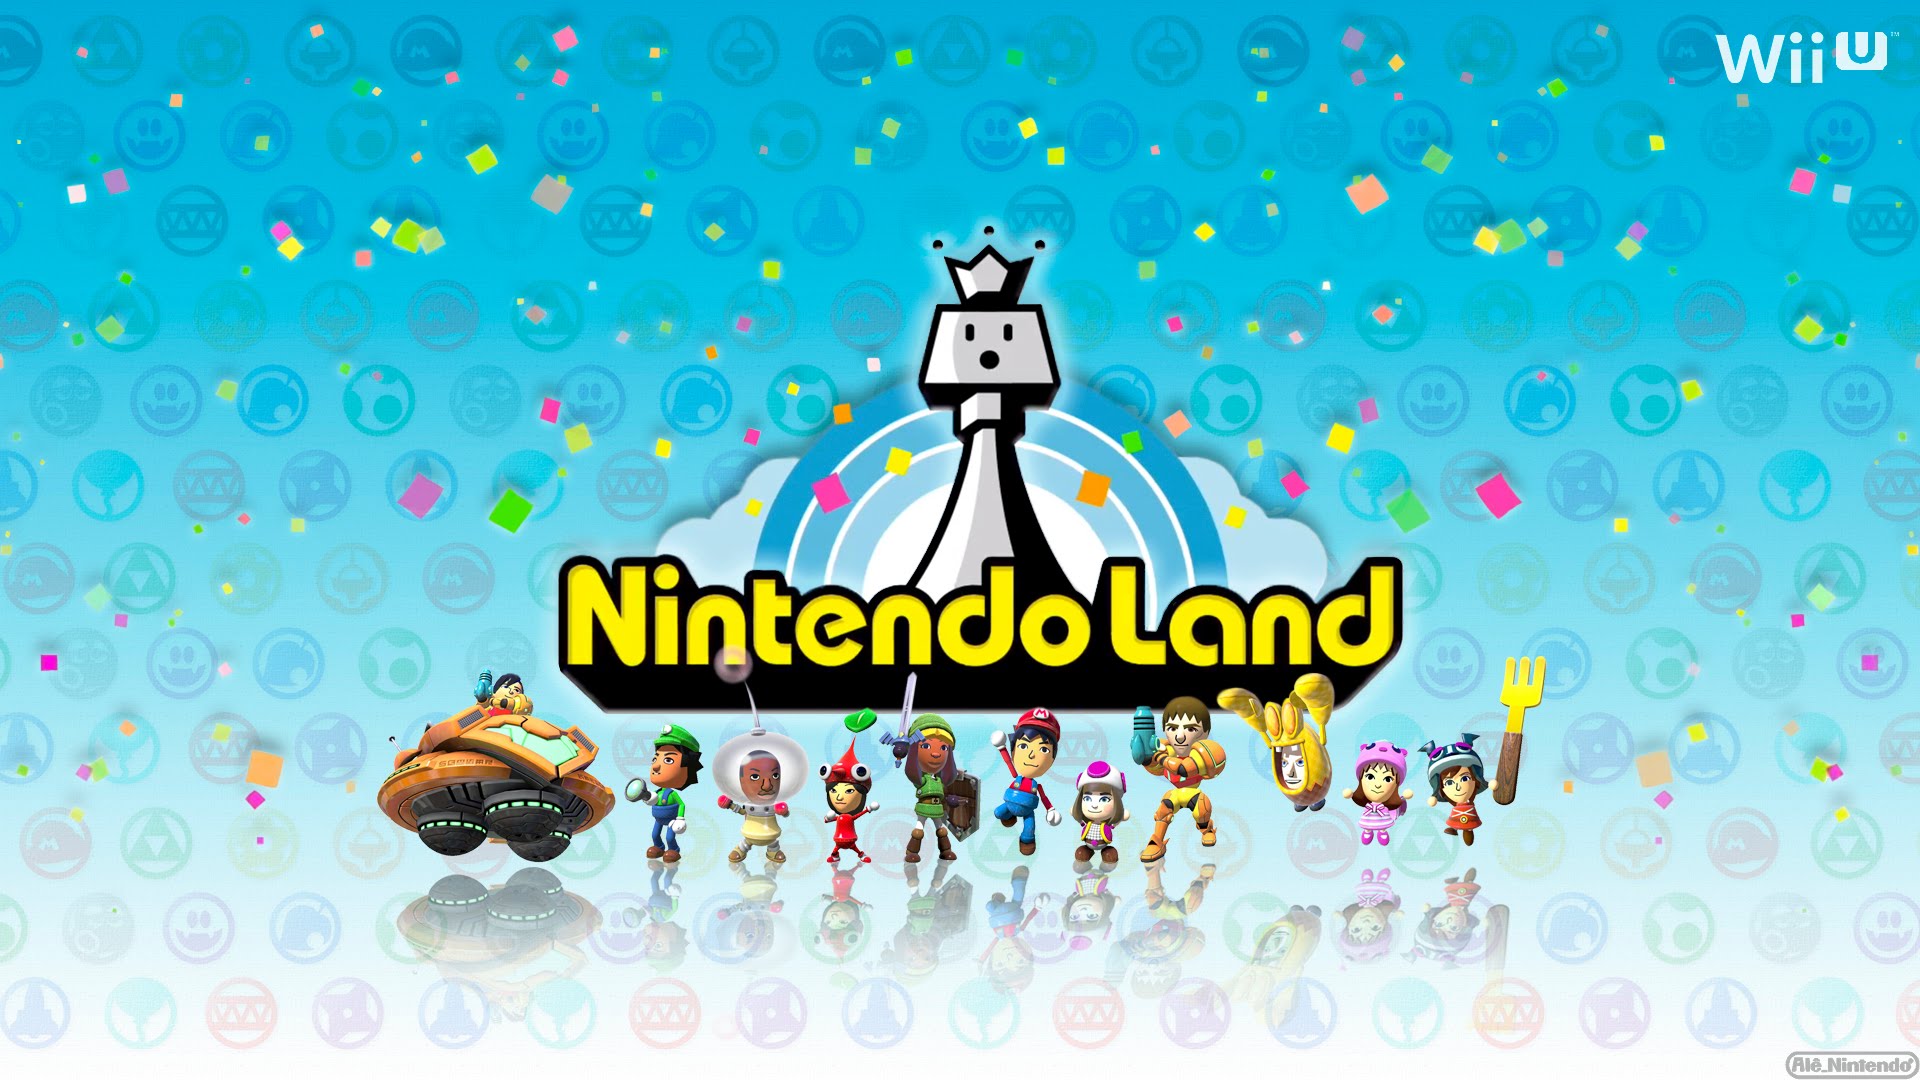 Nintendo land. Nintendo Land игра. Nintendo Land персонажи. Nintendo Land Tokyo.